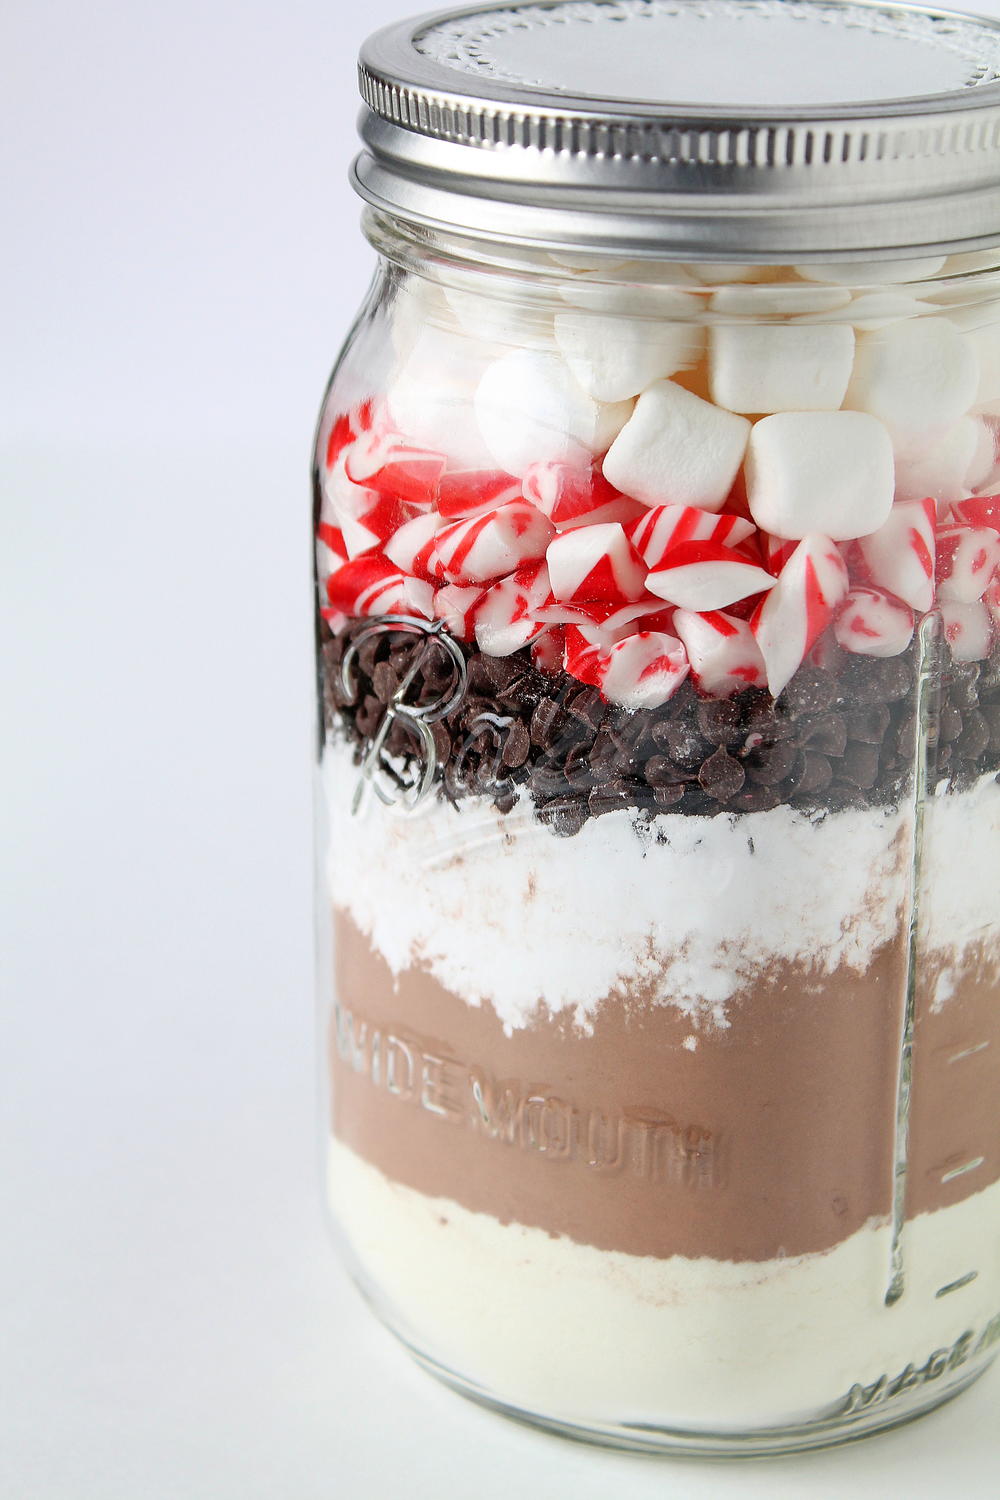 Hot Chocolate Mix Recipes In A Jar